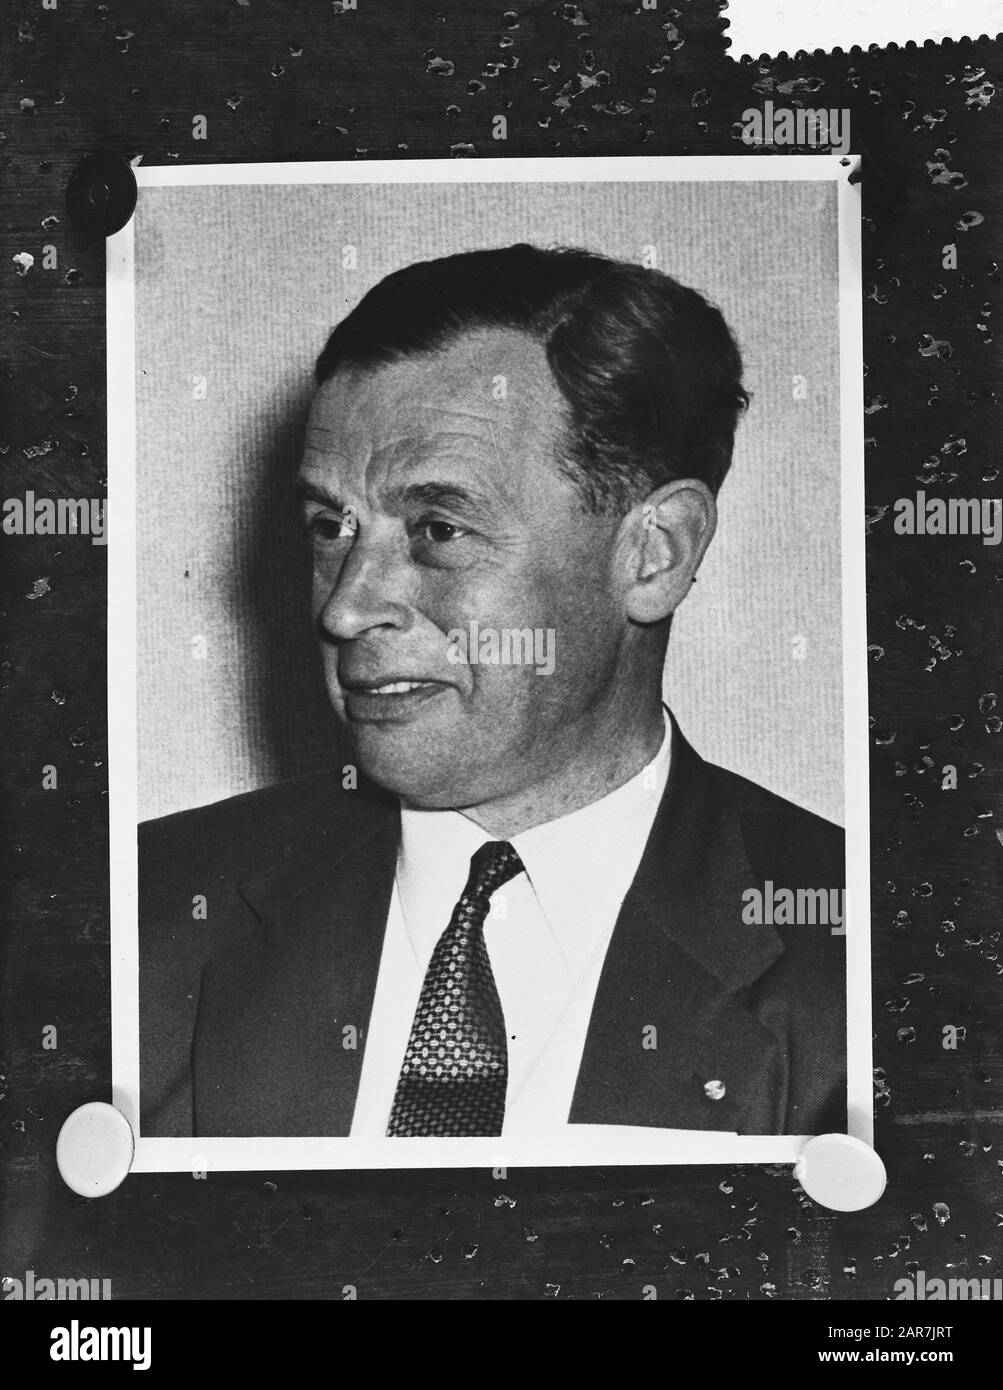 Ora S. H. tergicristallo, nuovo Ministro della Difesa Data: 3 settembre 1959 Parole Chiave: Ministri Nome personale: Ora S. H. tergicristallo Foto Stock